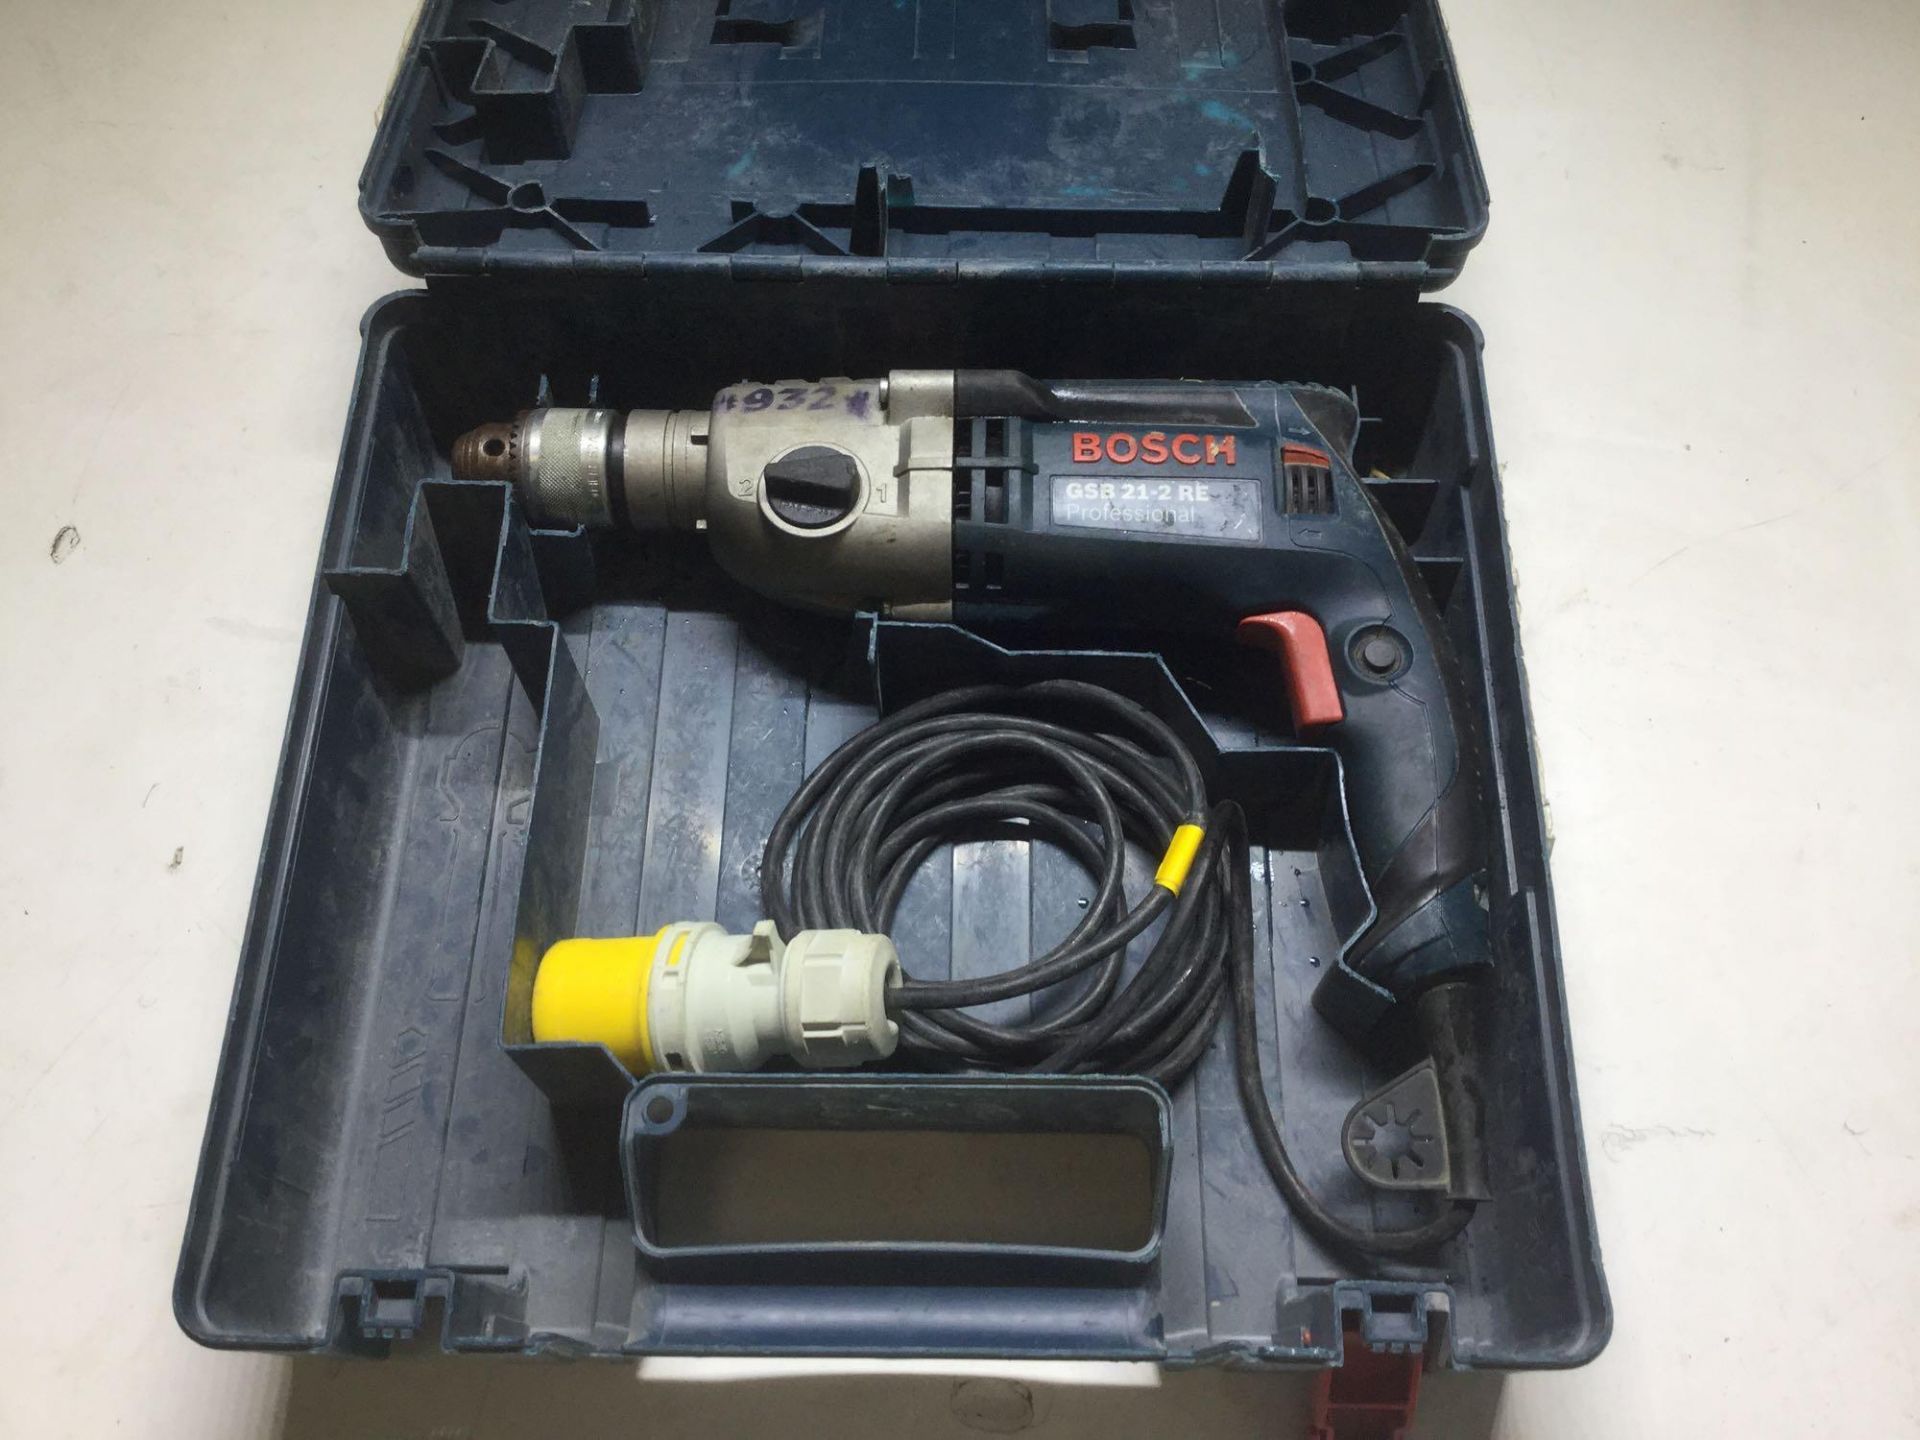 Bosch hammer drill model number GSB 21â€“2E 110v